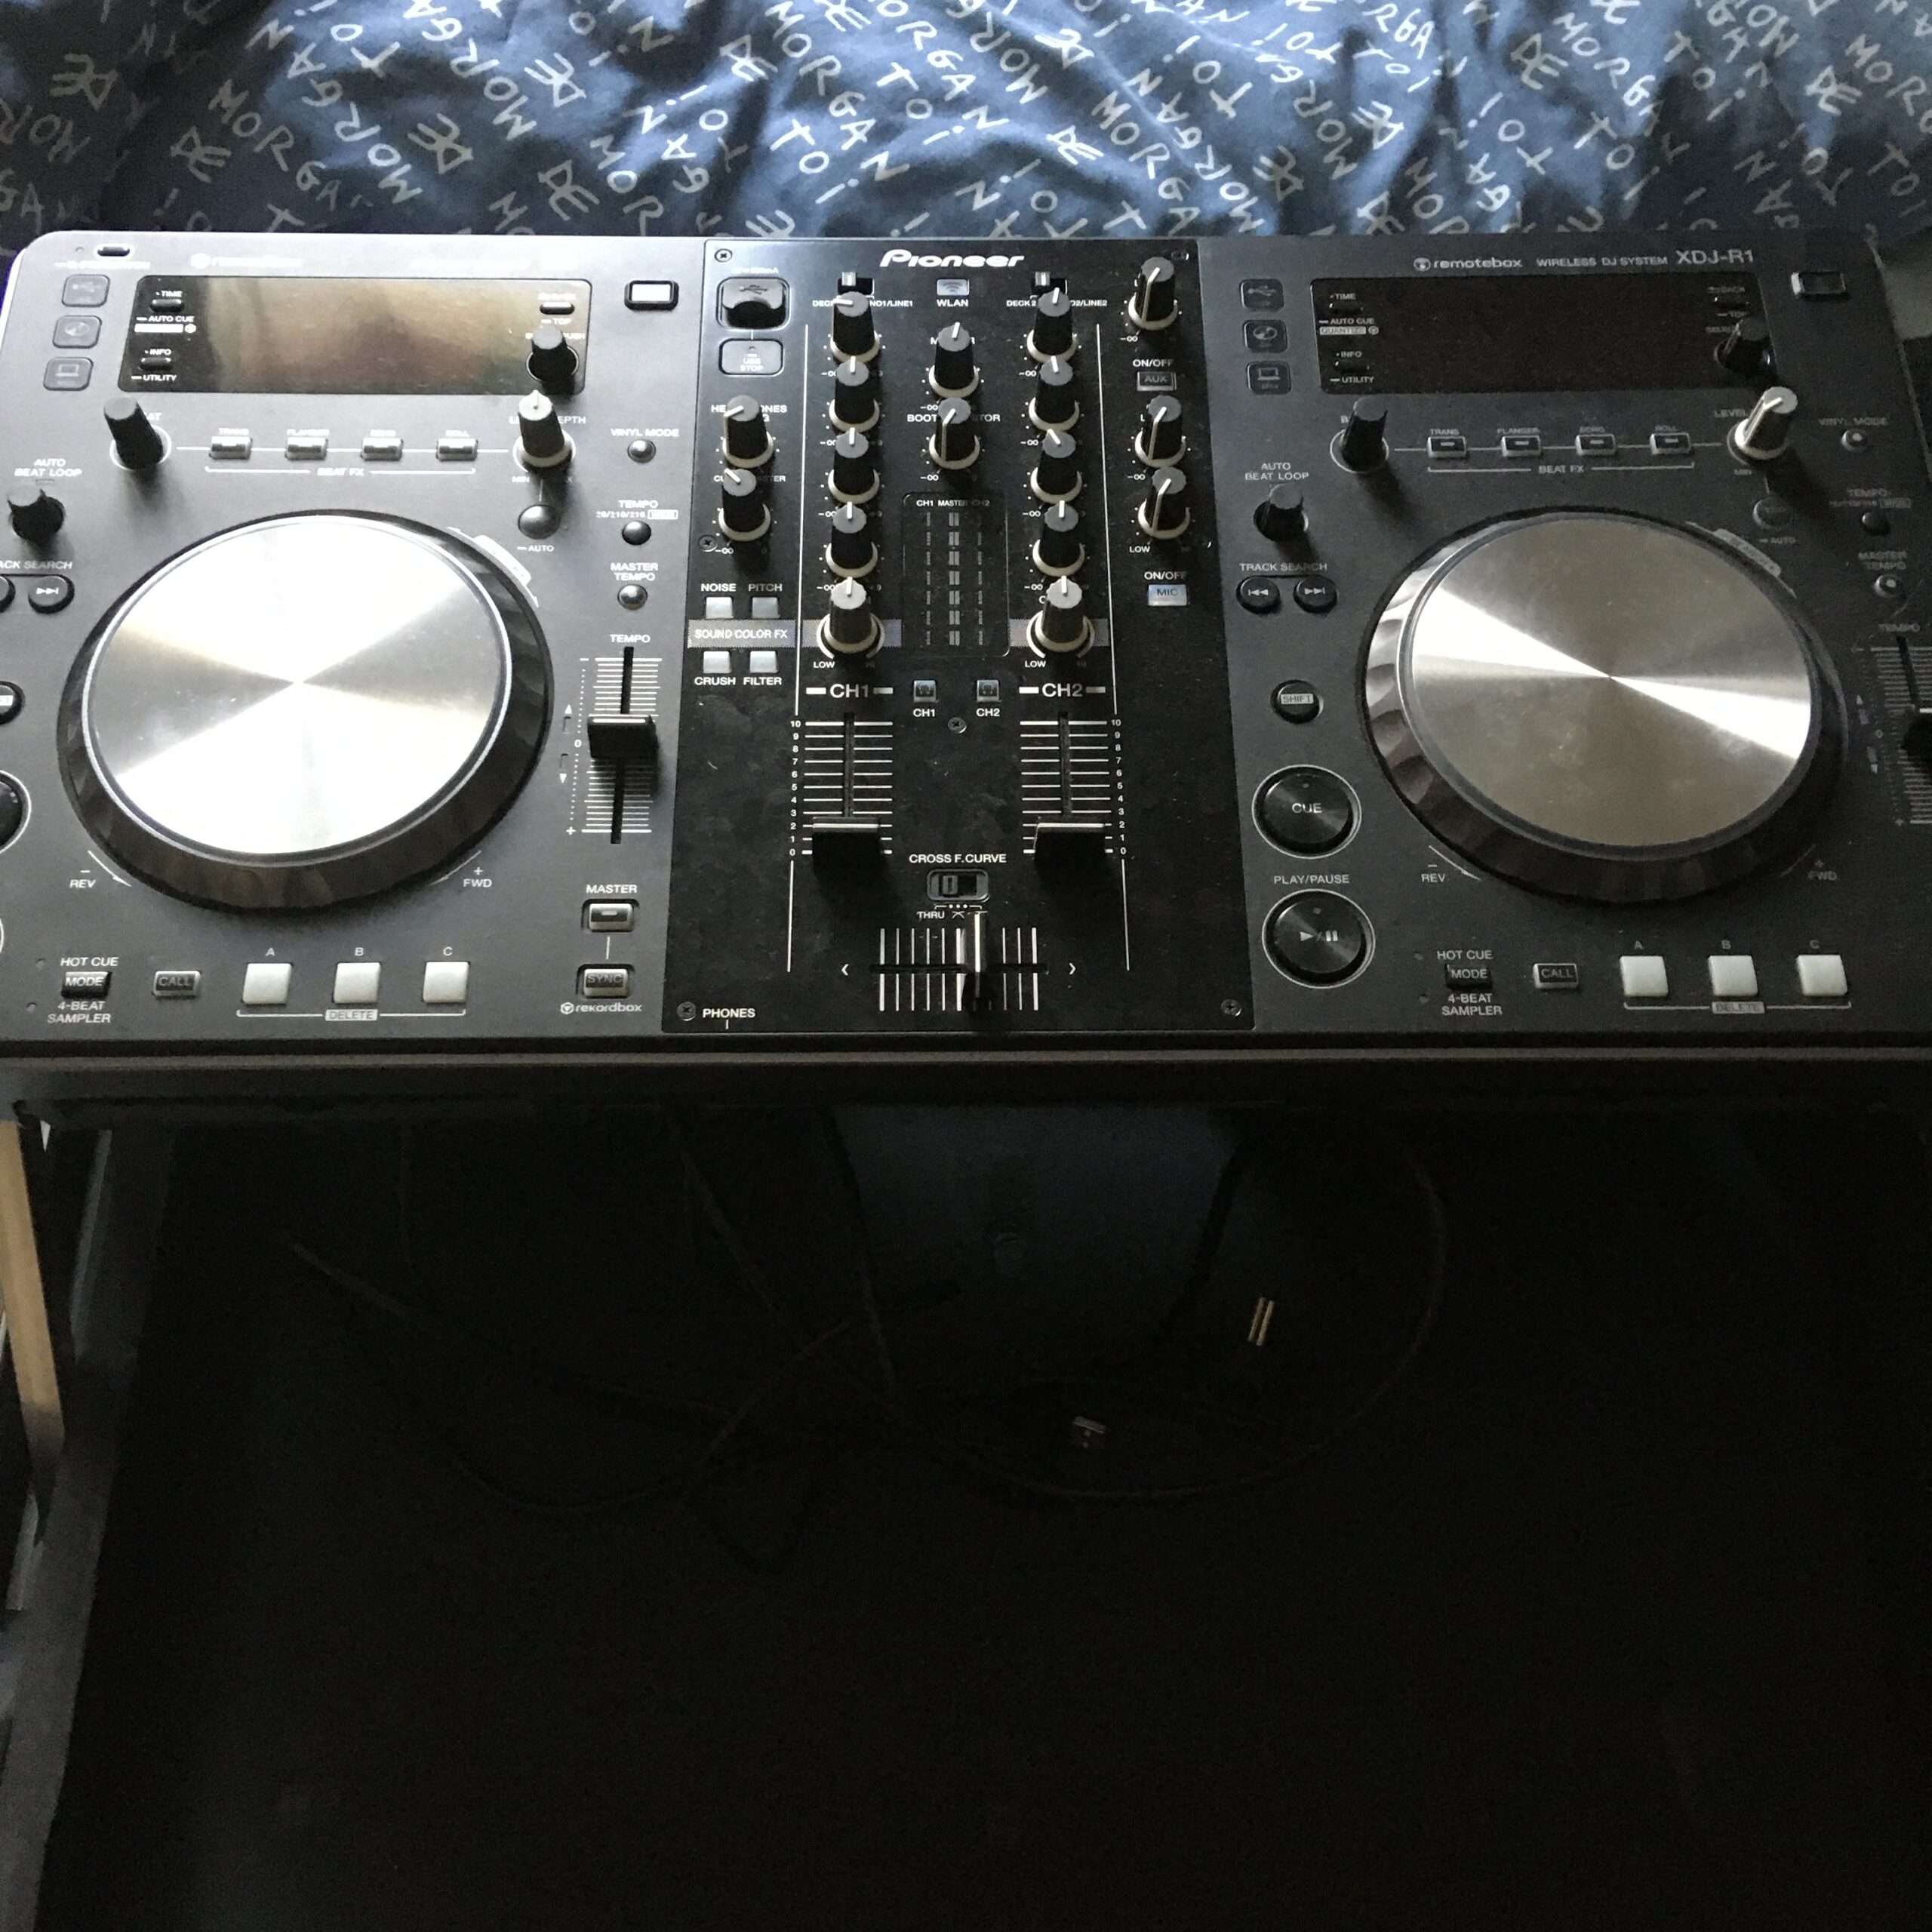 Table de mixage Pioneer XDJ-R1